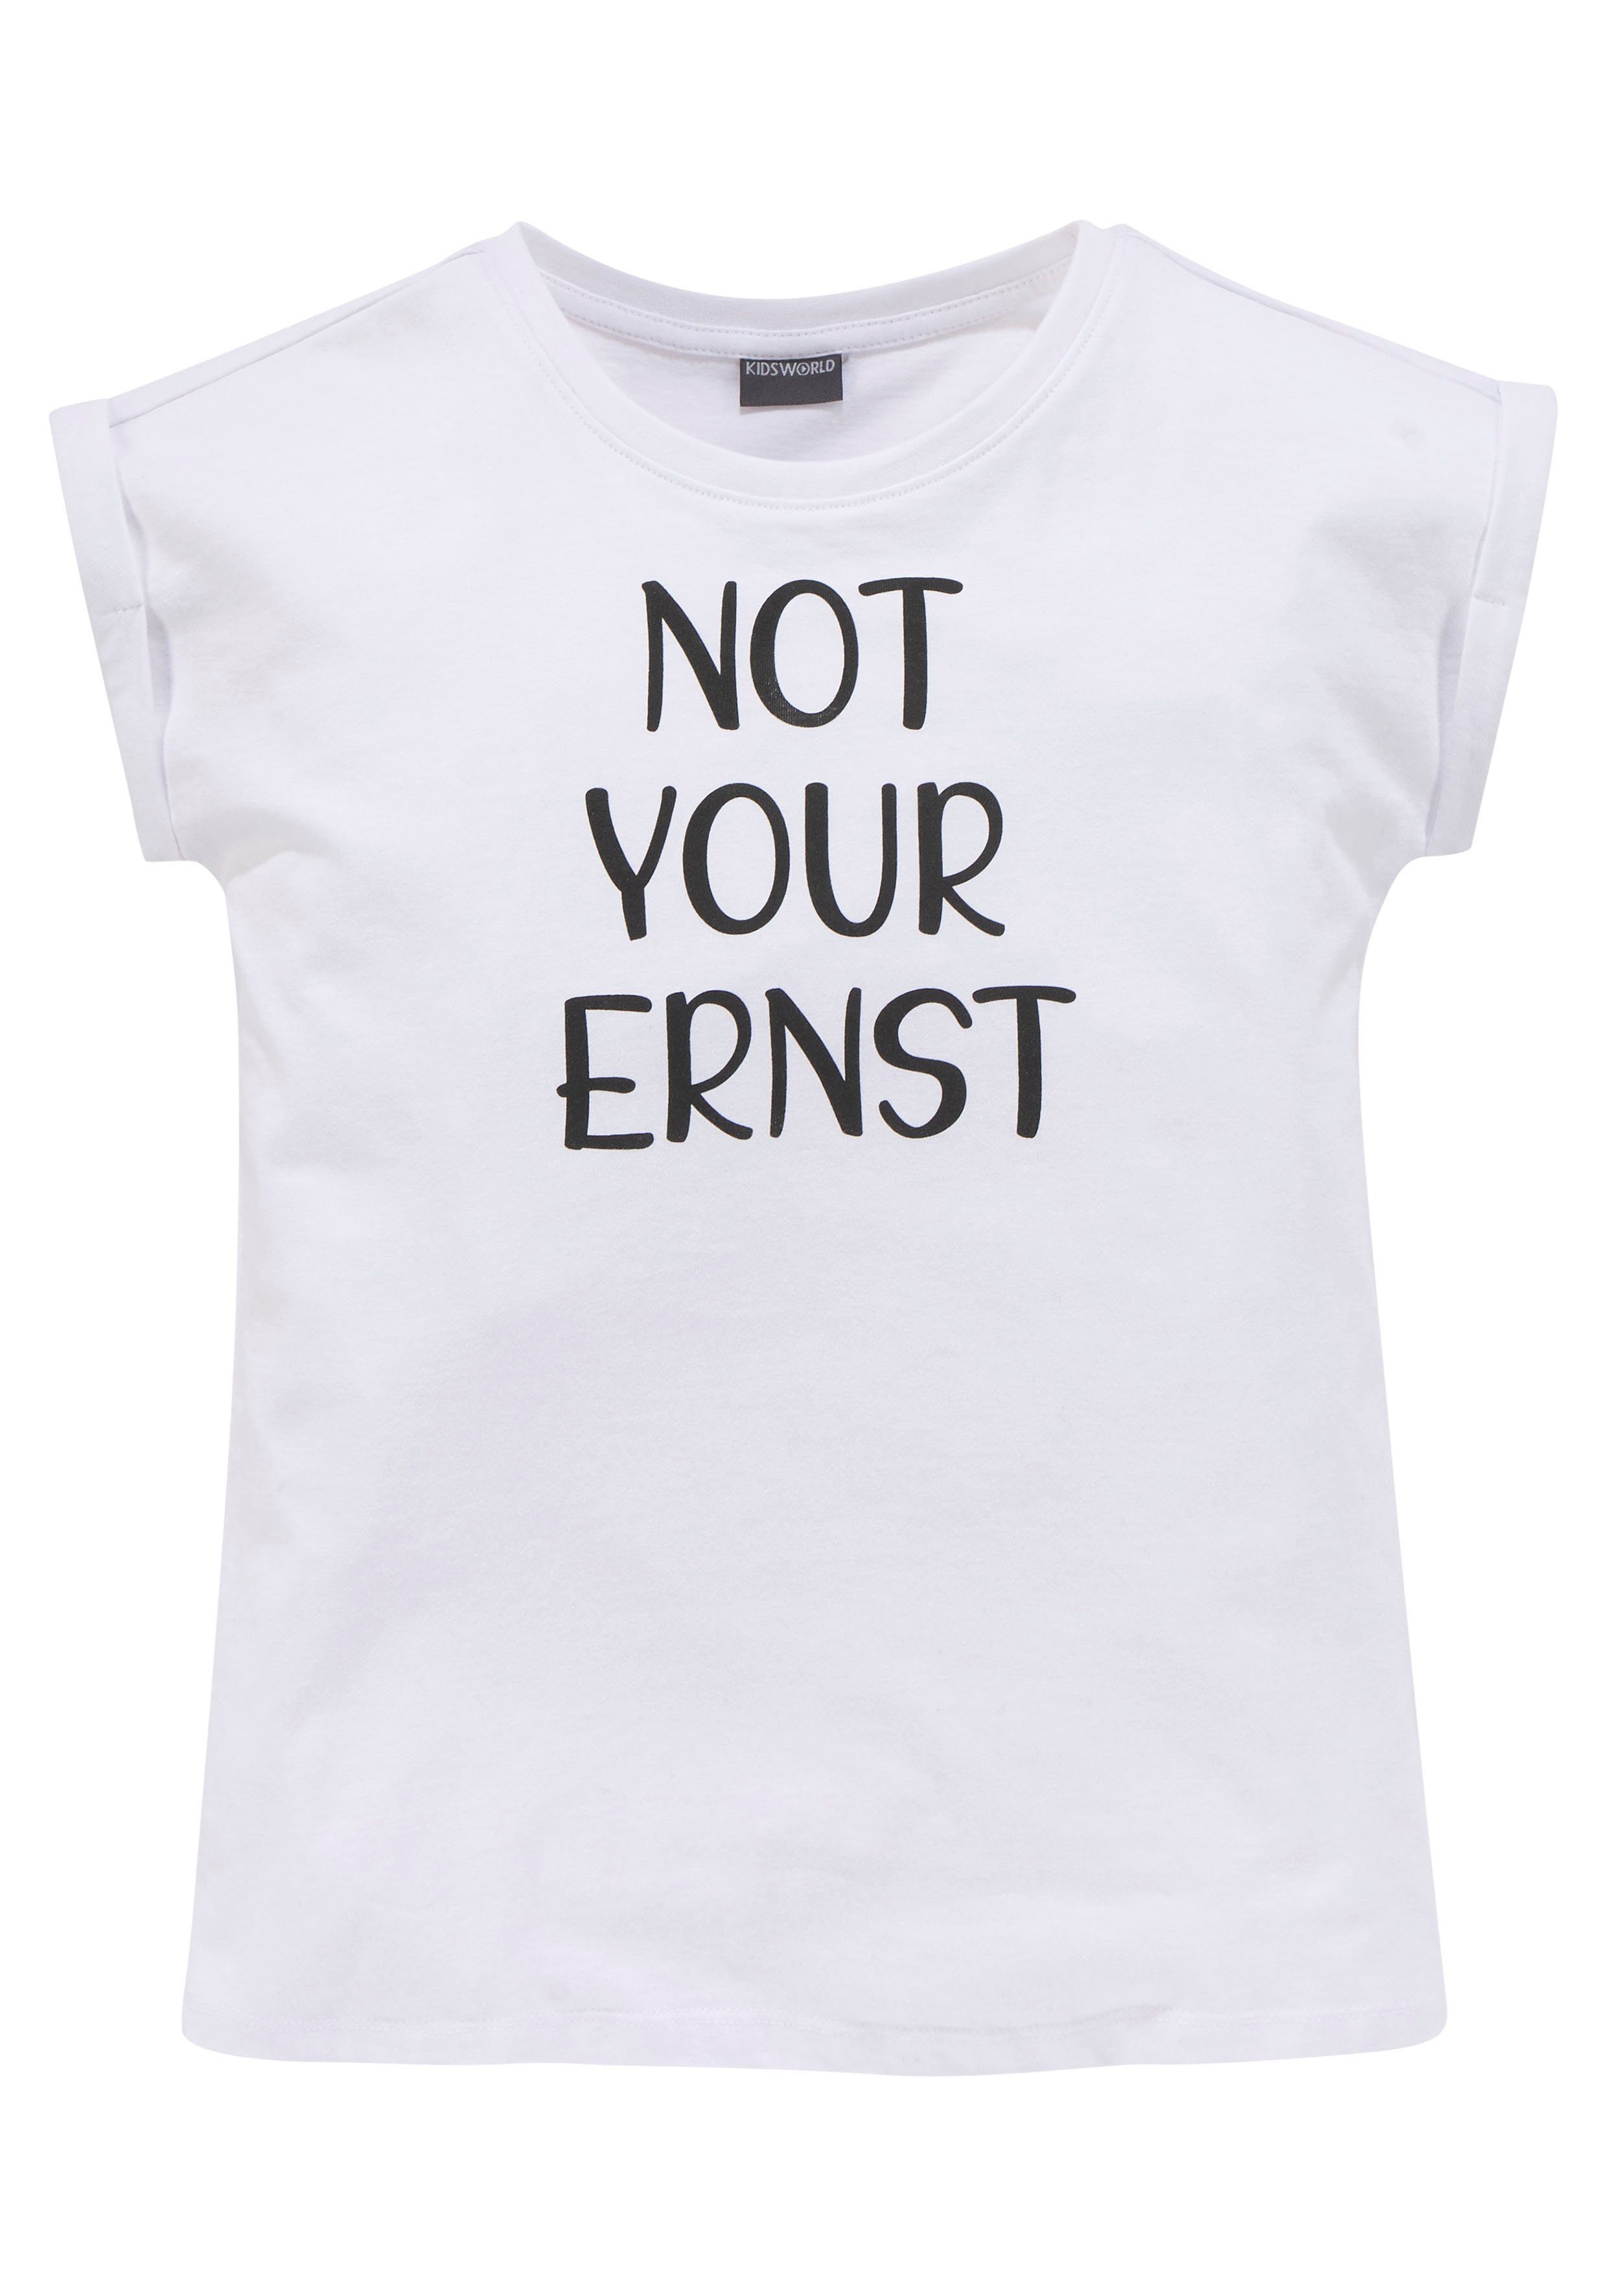 KIDSWORLD T-Shirt NOT ERNST Form YOUR Ärmelaufschlag mit legere kleinem